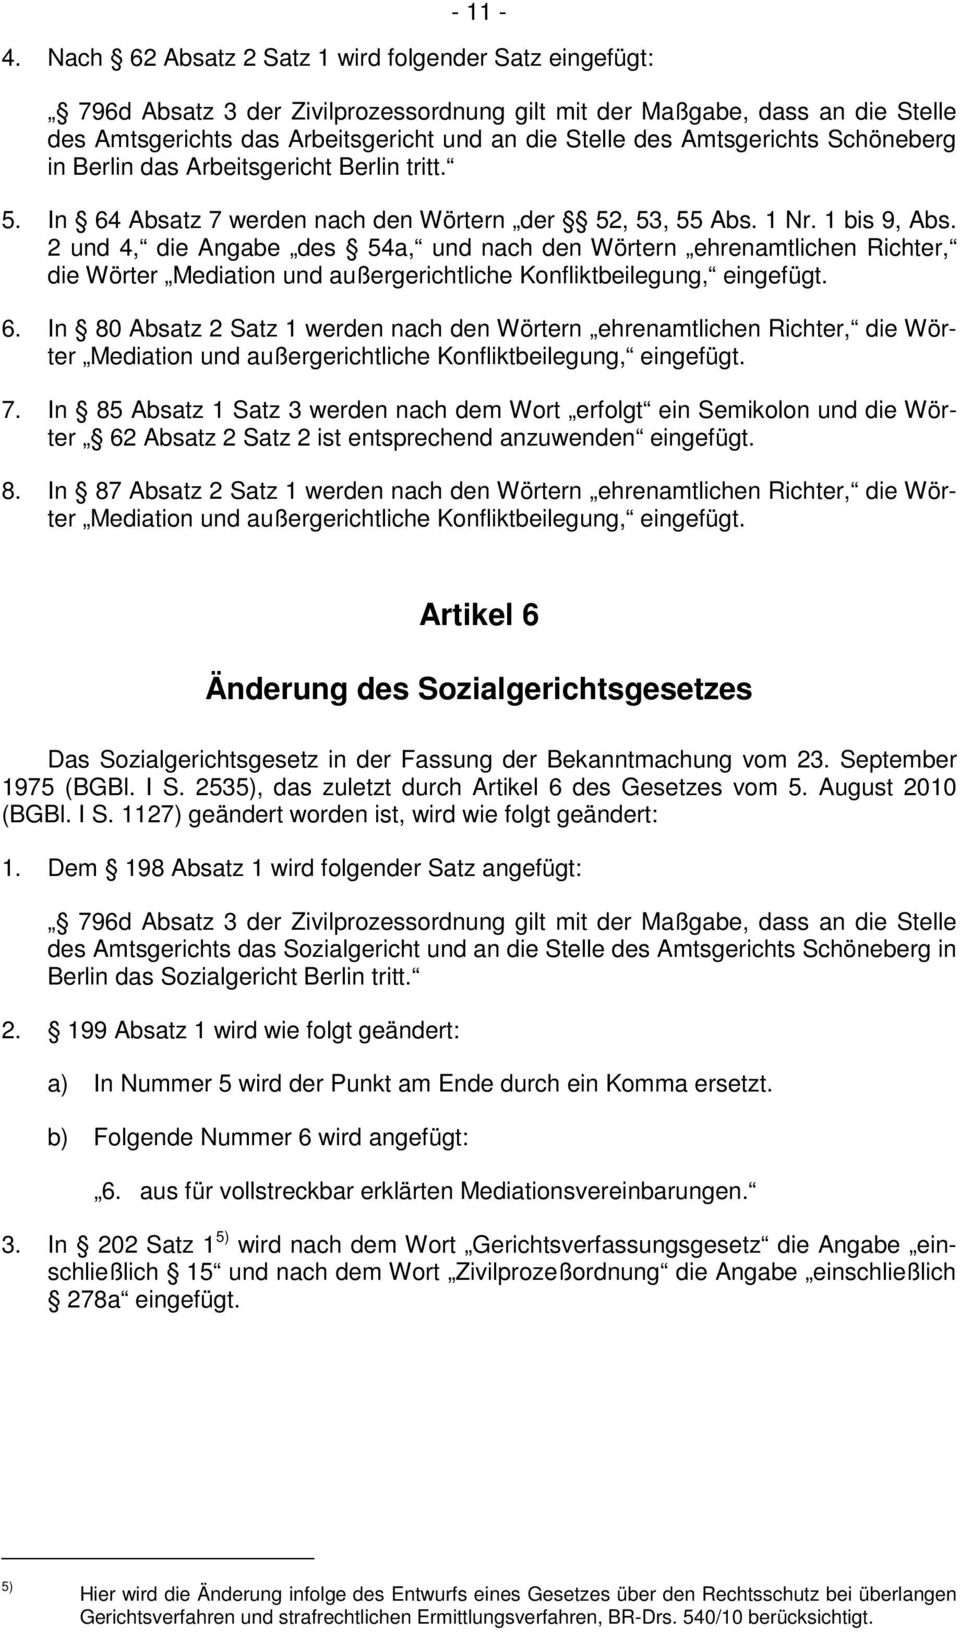 Amtsgerichts Schöneberg in Berlin das Arbeitsgericht Berlin tritt. 5. In 64 Absatz 7 werden nach den Wörtern der 52, 53, 55 Abs. 1 Nr. 1 bis 9, Abs.